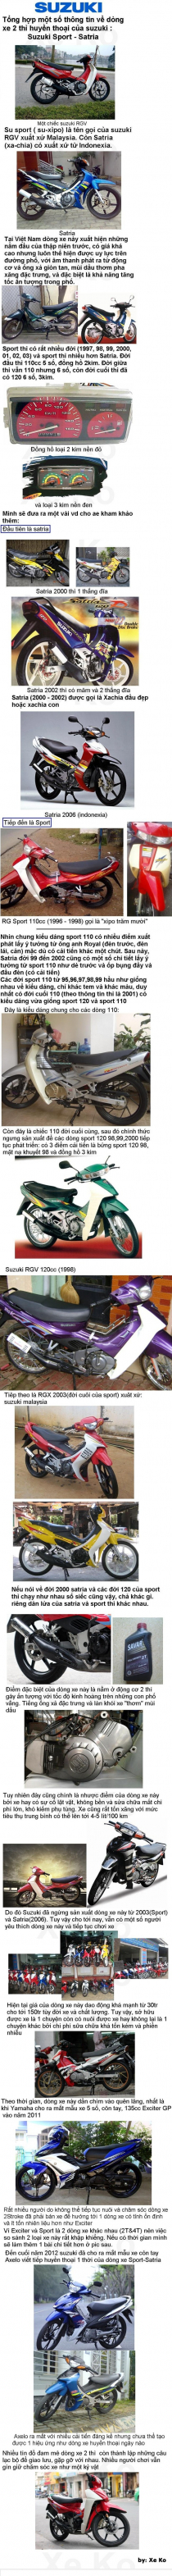 Tổng hợp một số thông tin các dòng xe 2 thì của Suzuki